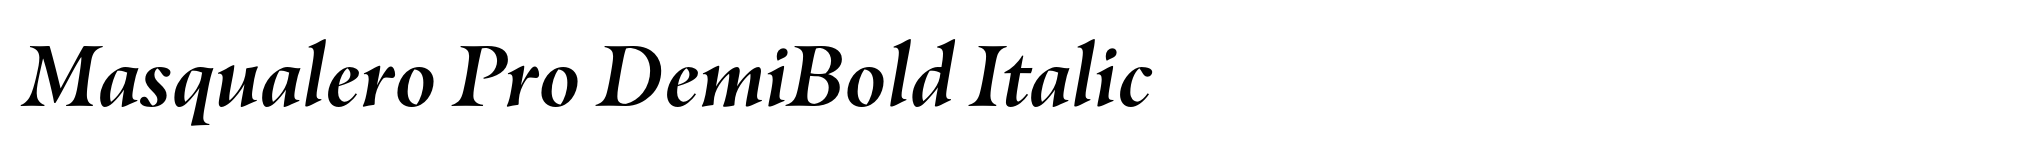 Masqualero Pro DemiBold Italic image